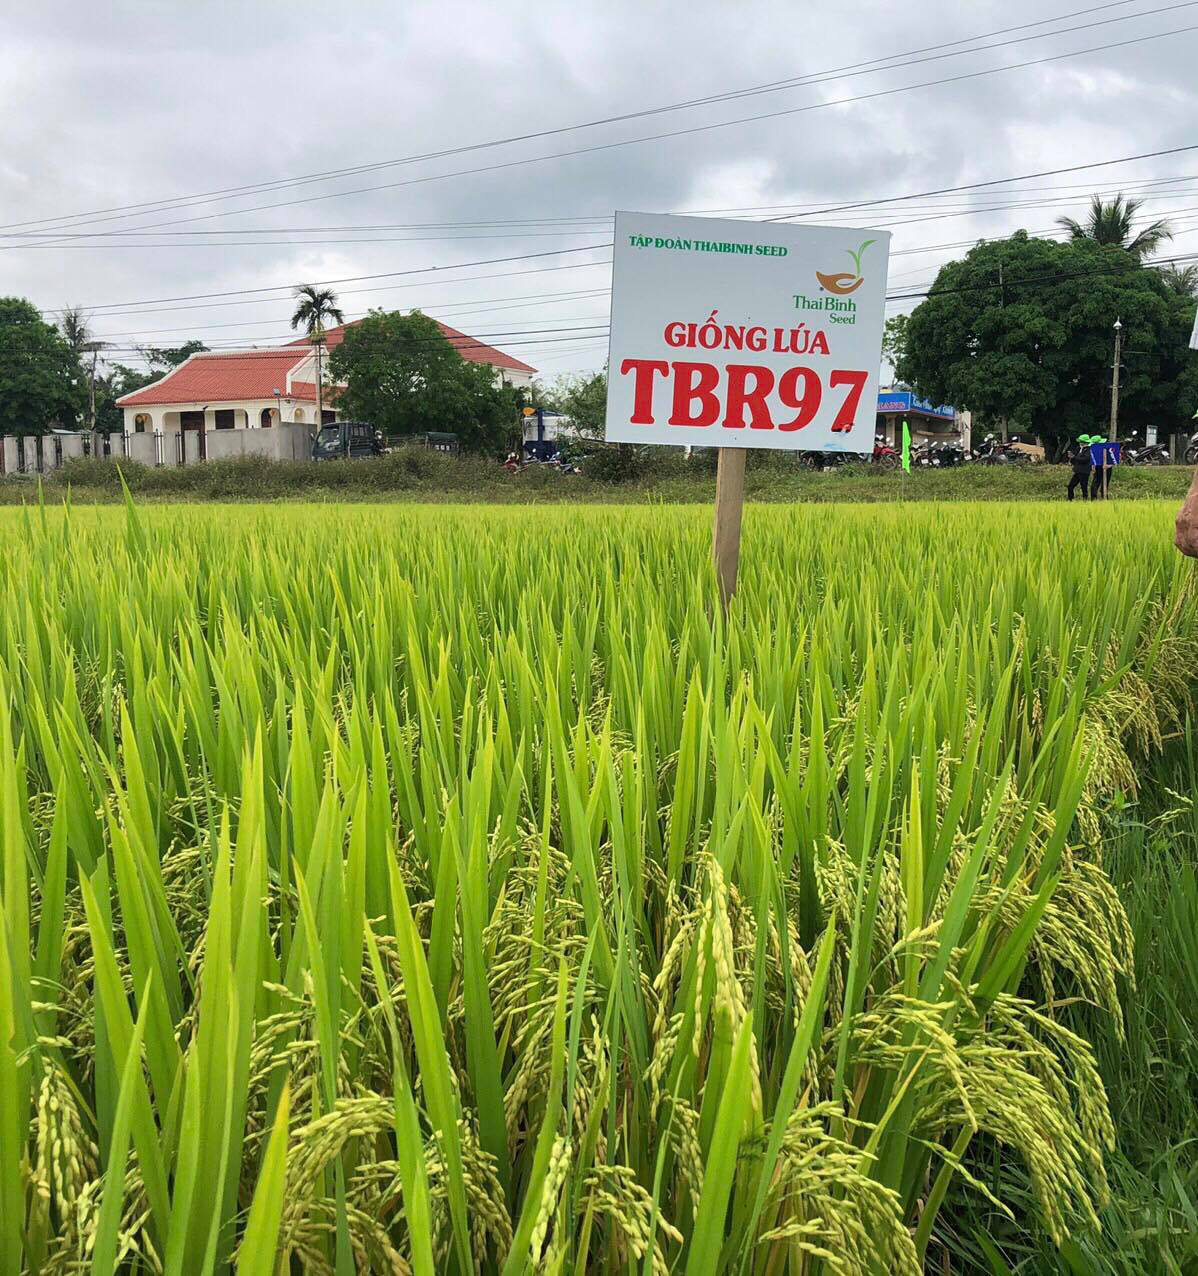 ThaiBinh Seed Miền Trung - Tây Nguyên: 15 năm sát cánh cùng nông dân cho những vụ mùa bội thu - Ảnh 11.